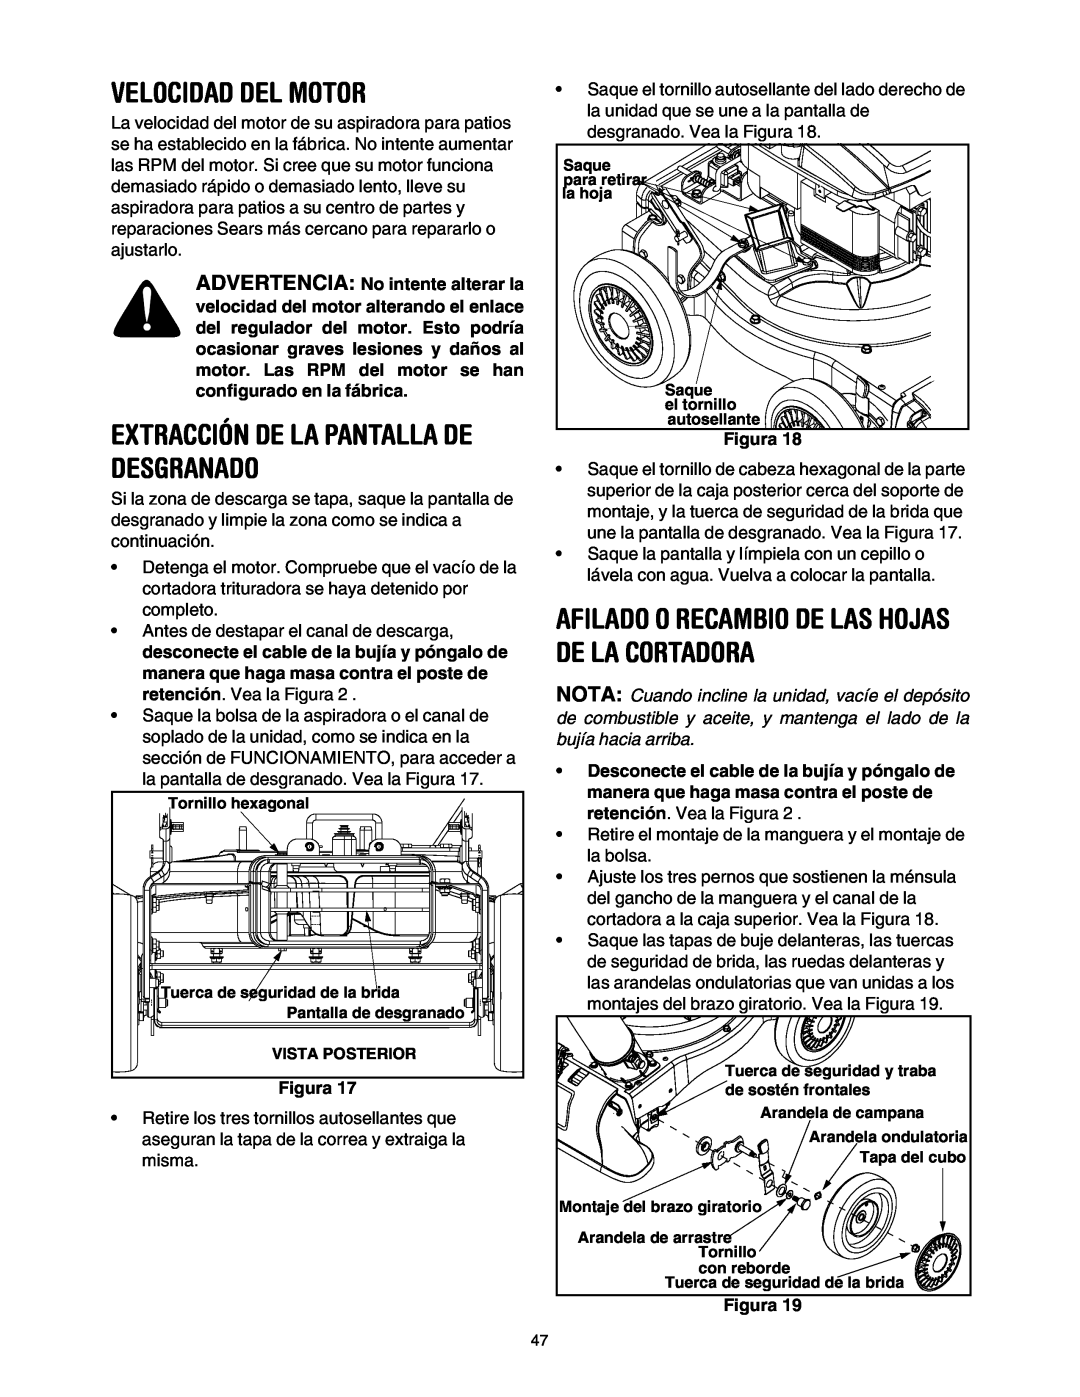 Craftsman 247.77099 operating instructions Velocidad Del Motor, Afilado O Recambio De Las Hojas De La Cortadora, Figura 